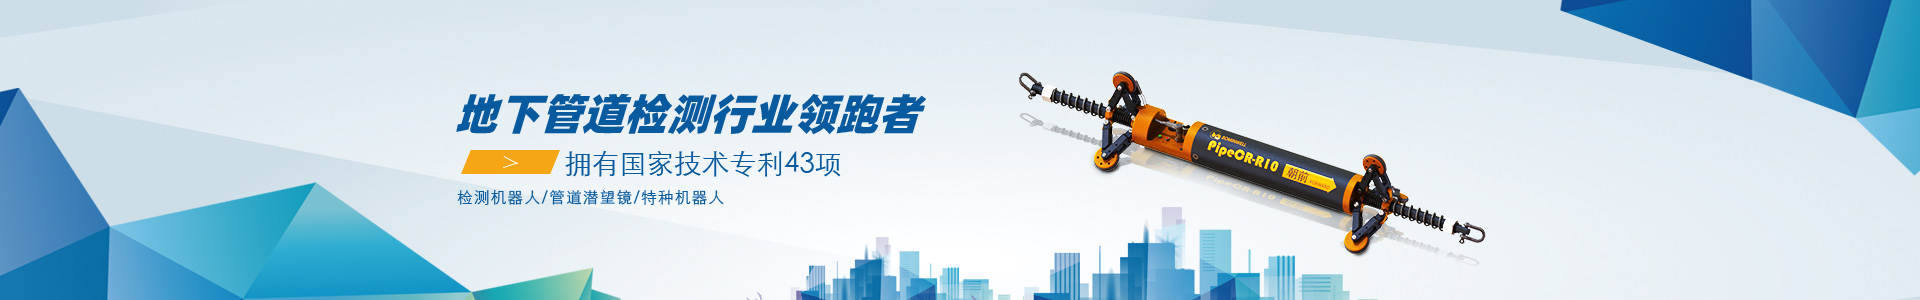 hth官网:中国首例下水道清淤机器人大型箱涵清淤工程圆满竣工